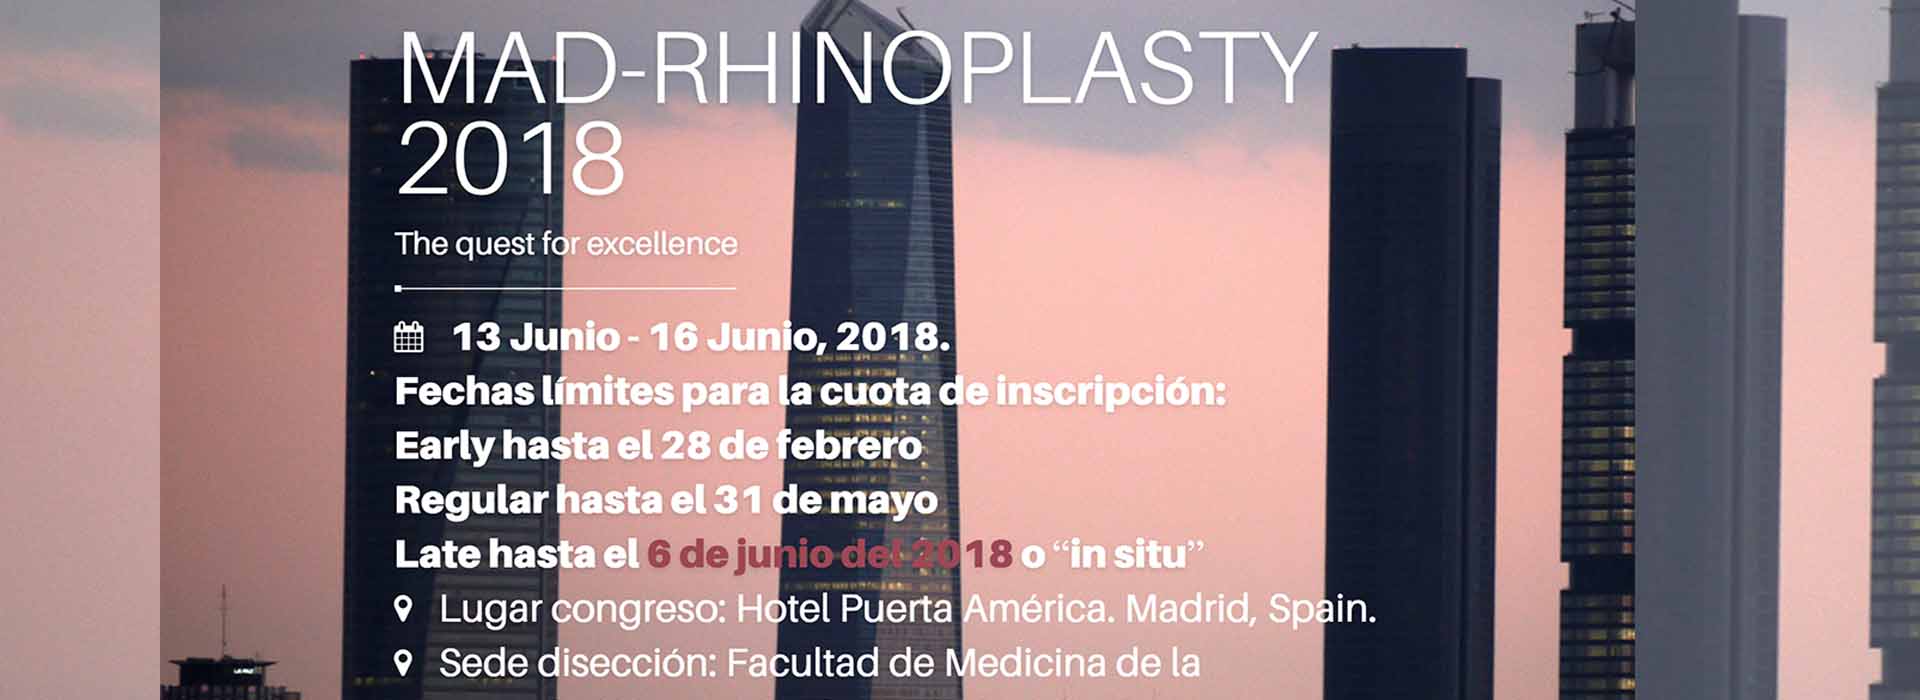 MAD-Rhinoplasty 2018